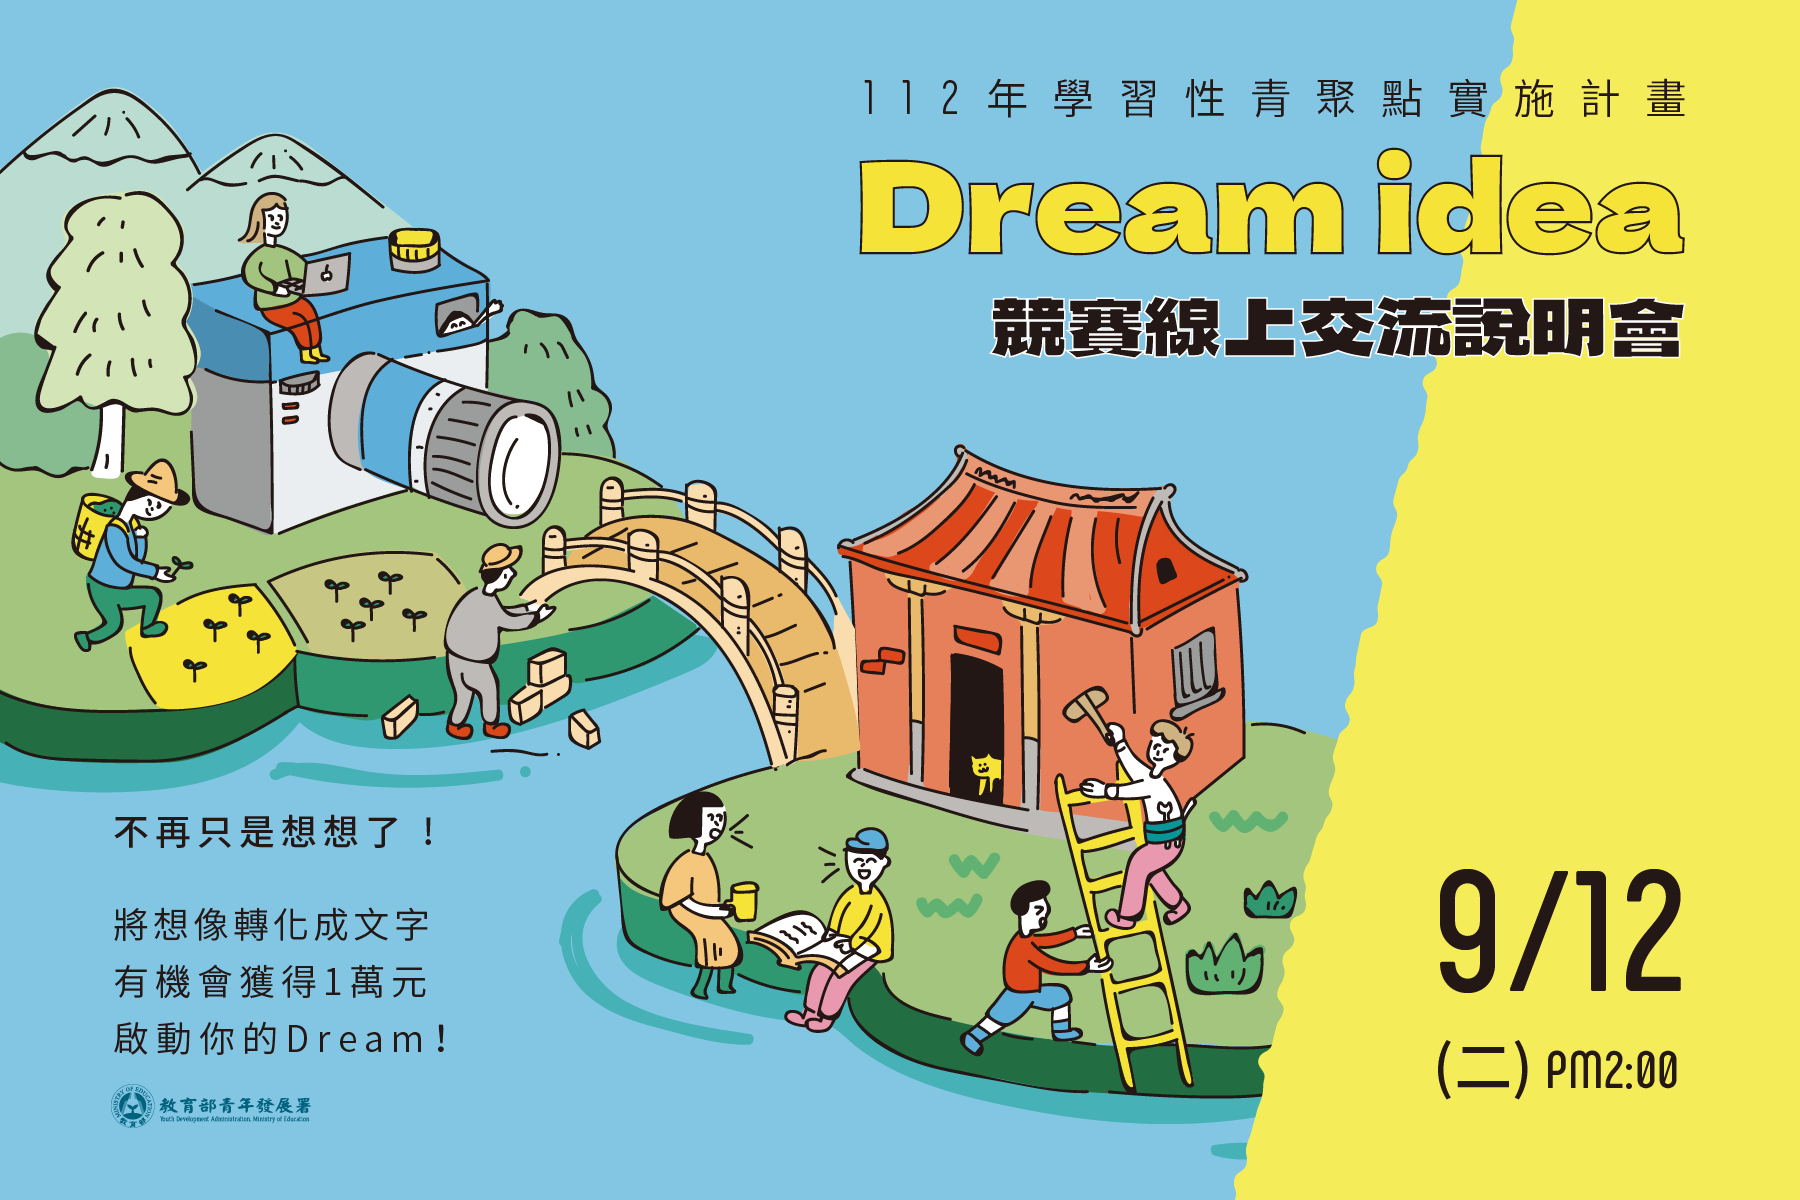 9/12 Dream idea競賽線上交流說明會